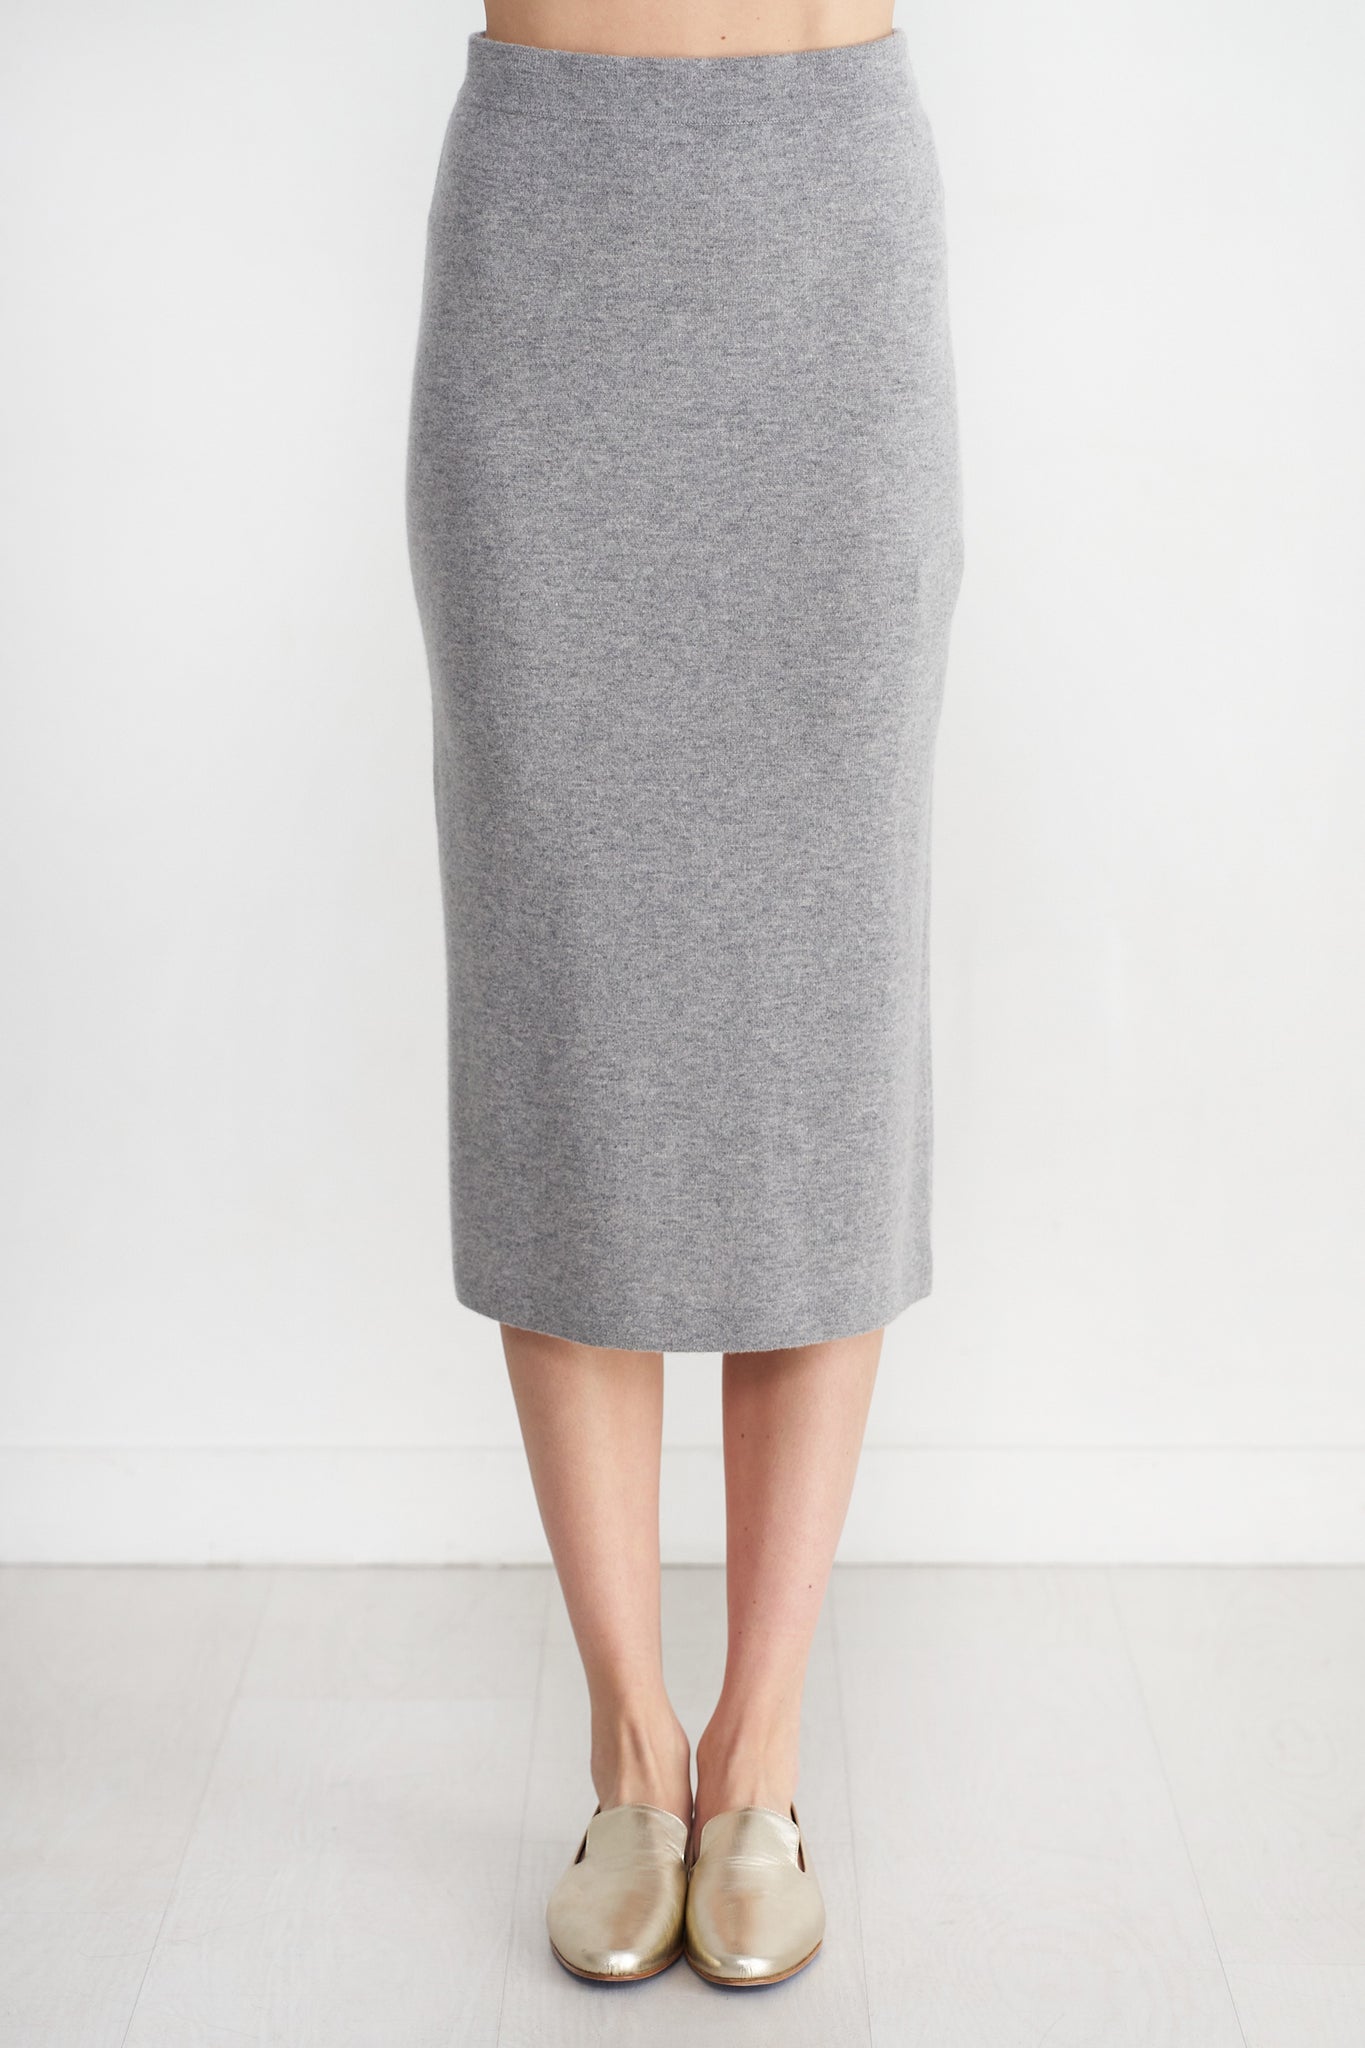 Allude - Long Skirt, Heather Melange